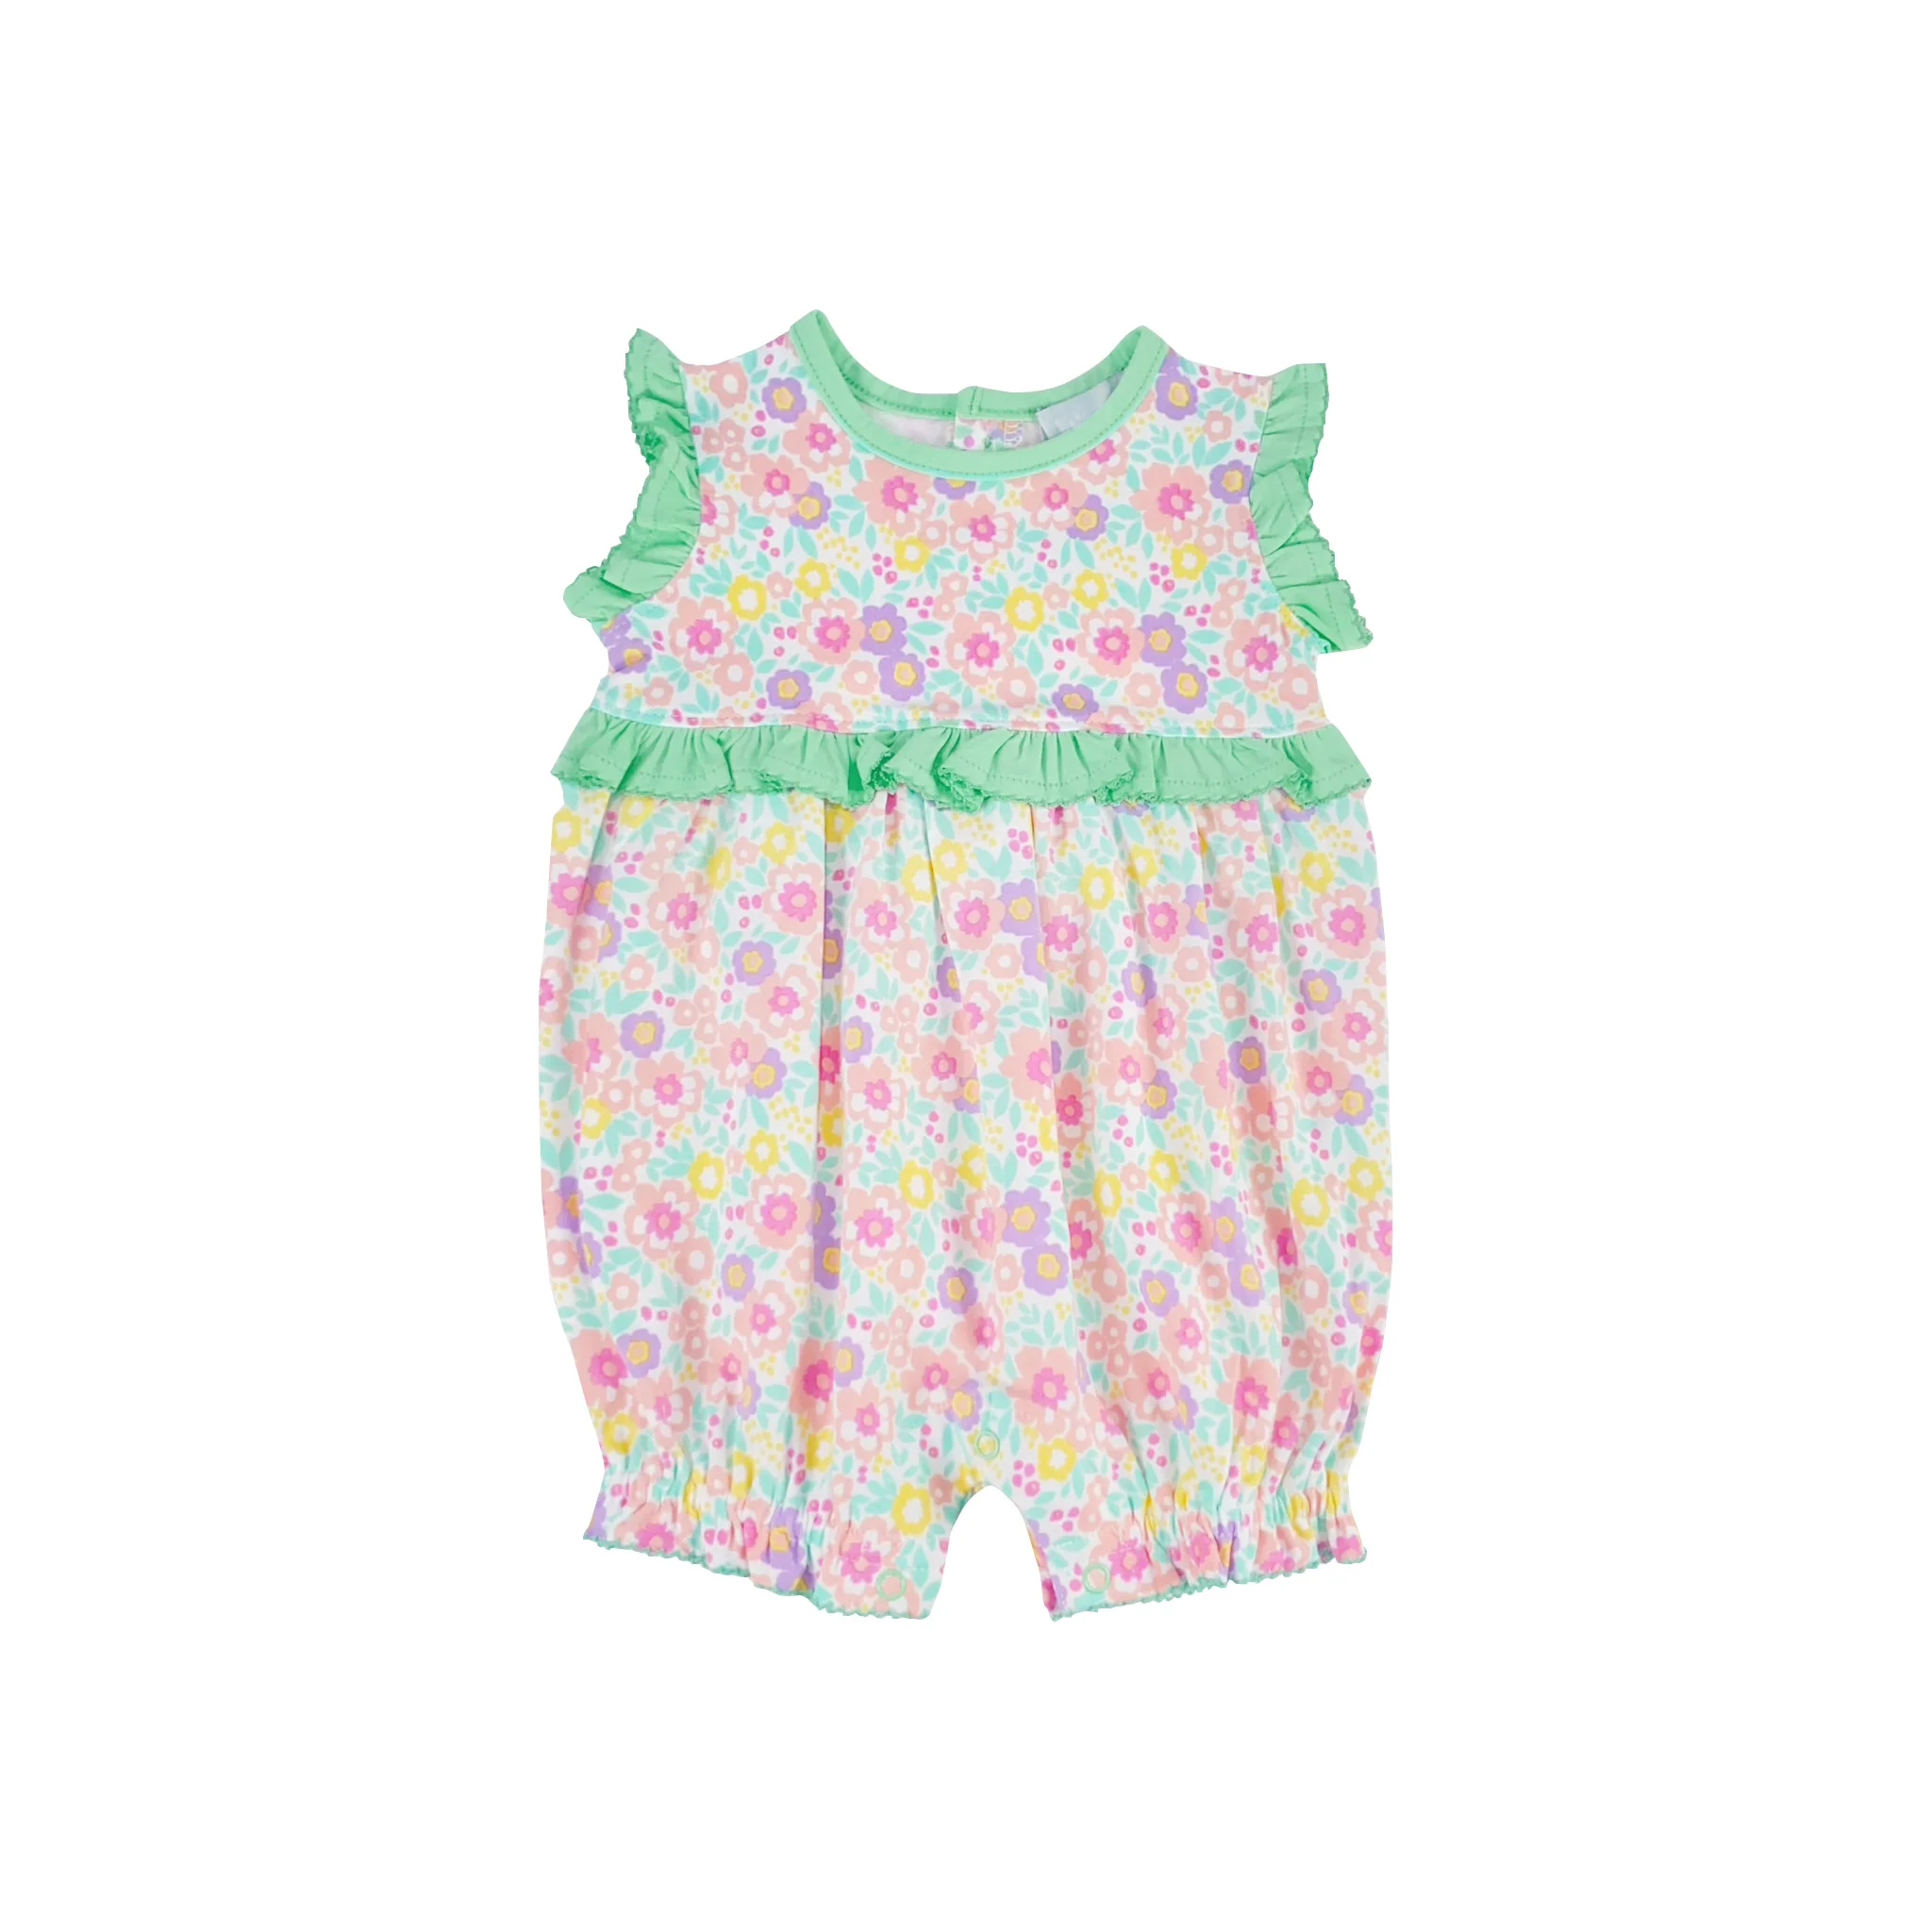 SR1629 pre-order baby girl clothes floral toddler girl summer romper